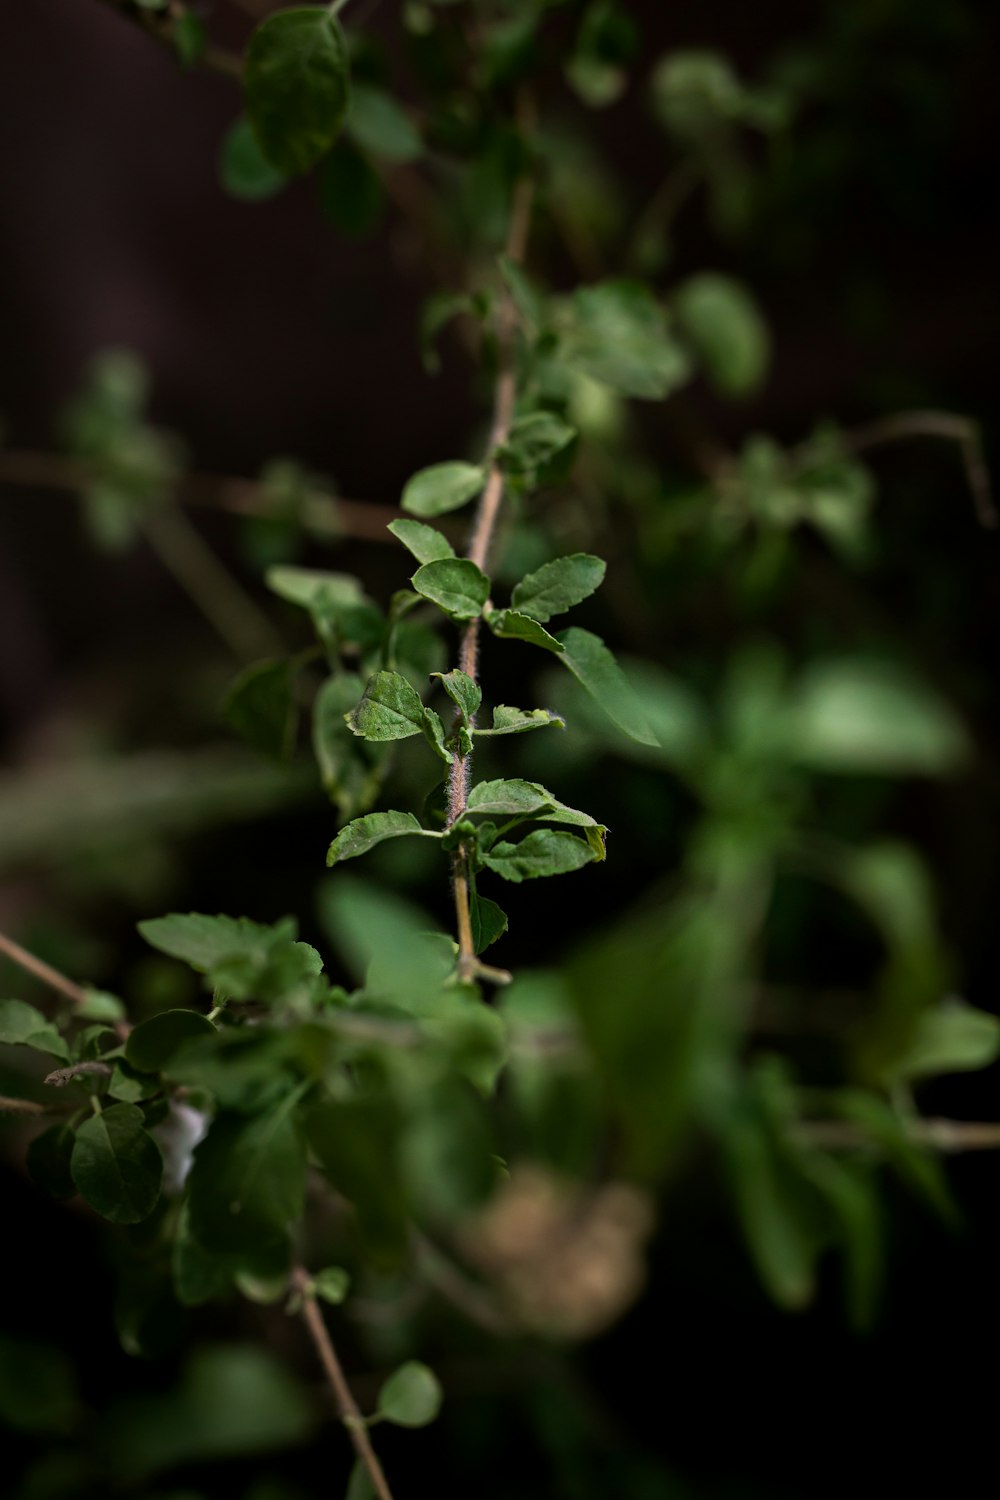 green plant in tilt shift lens